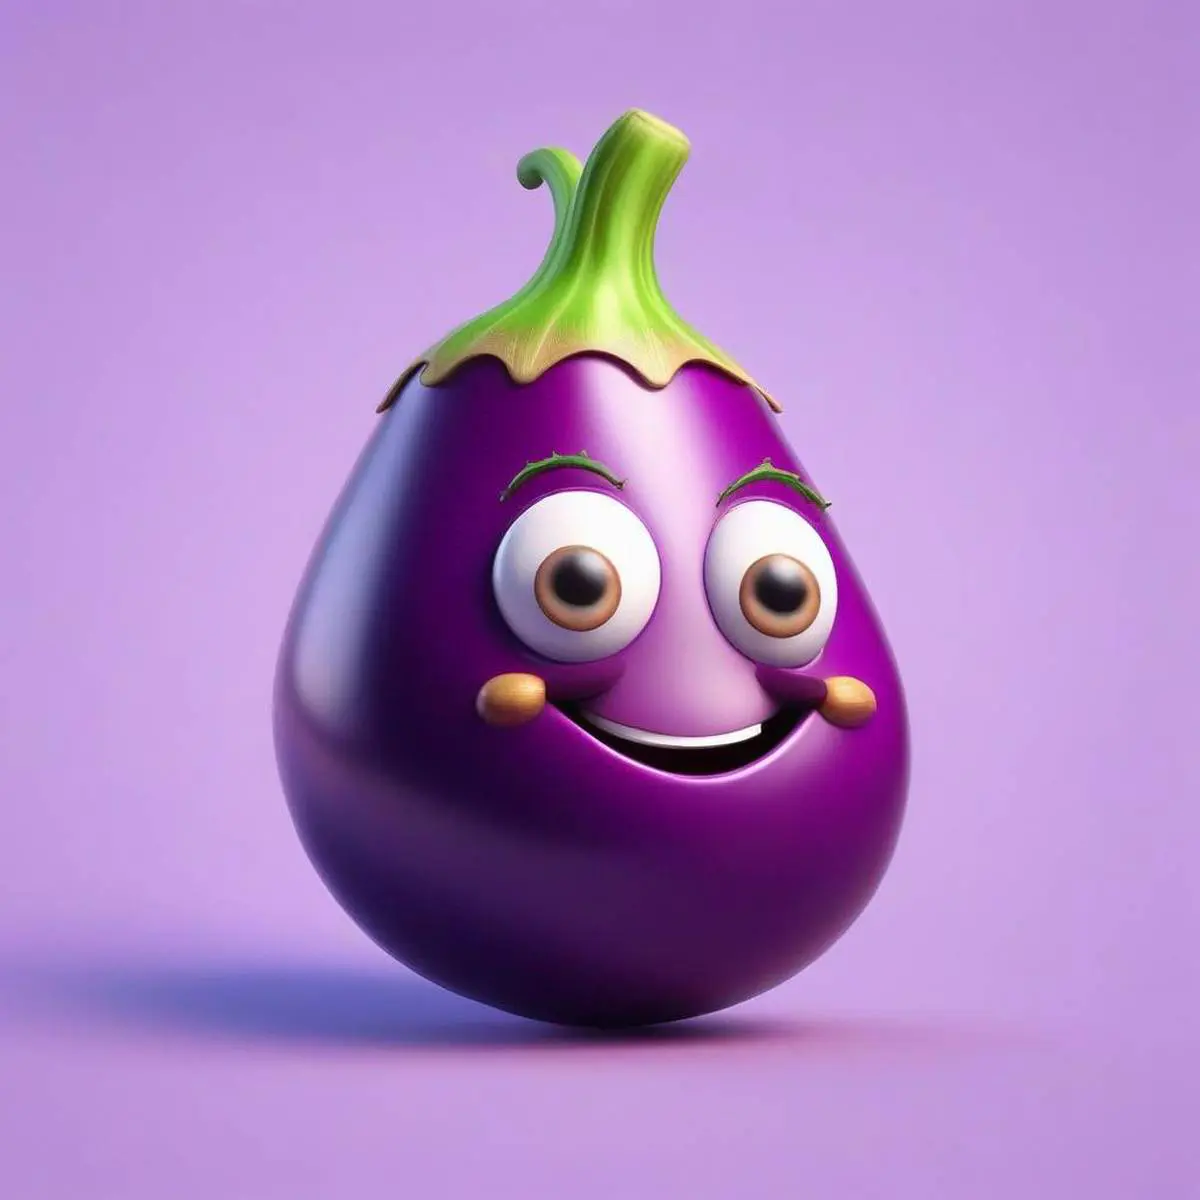 Eggplant puns